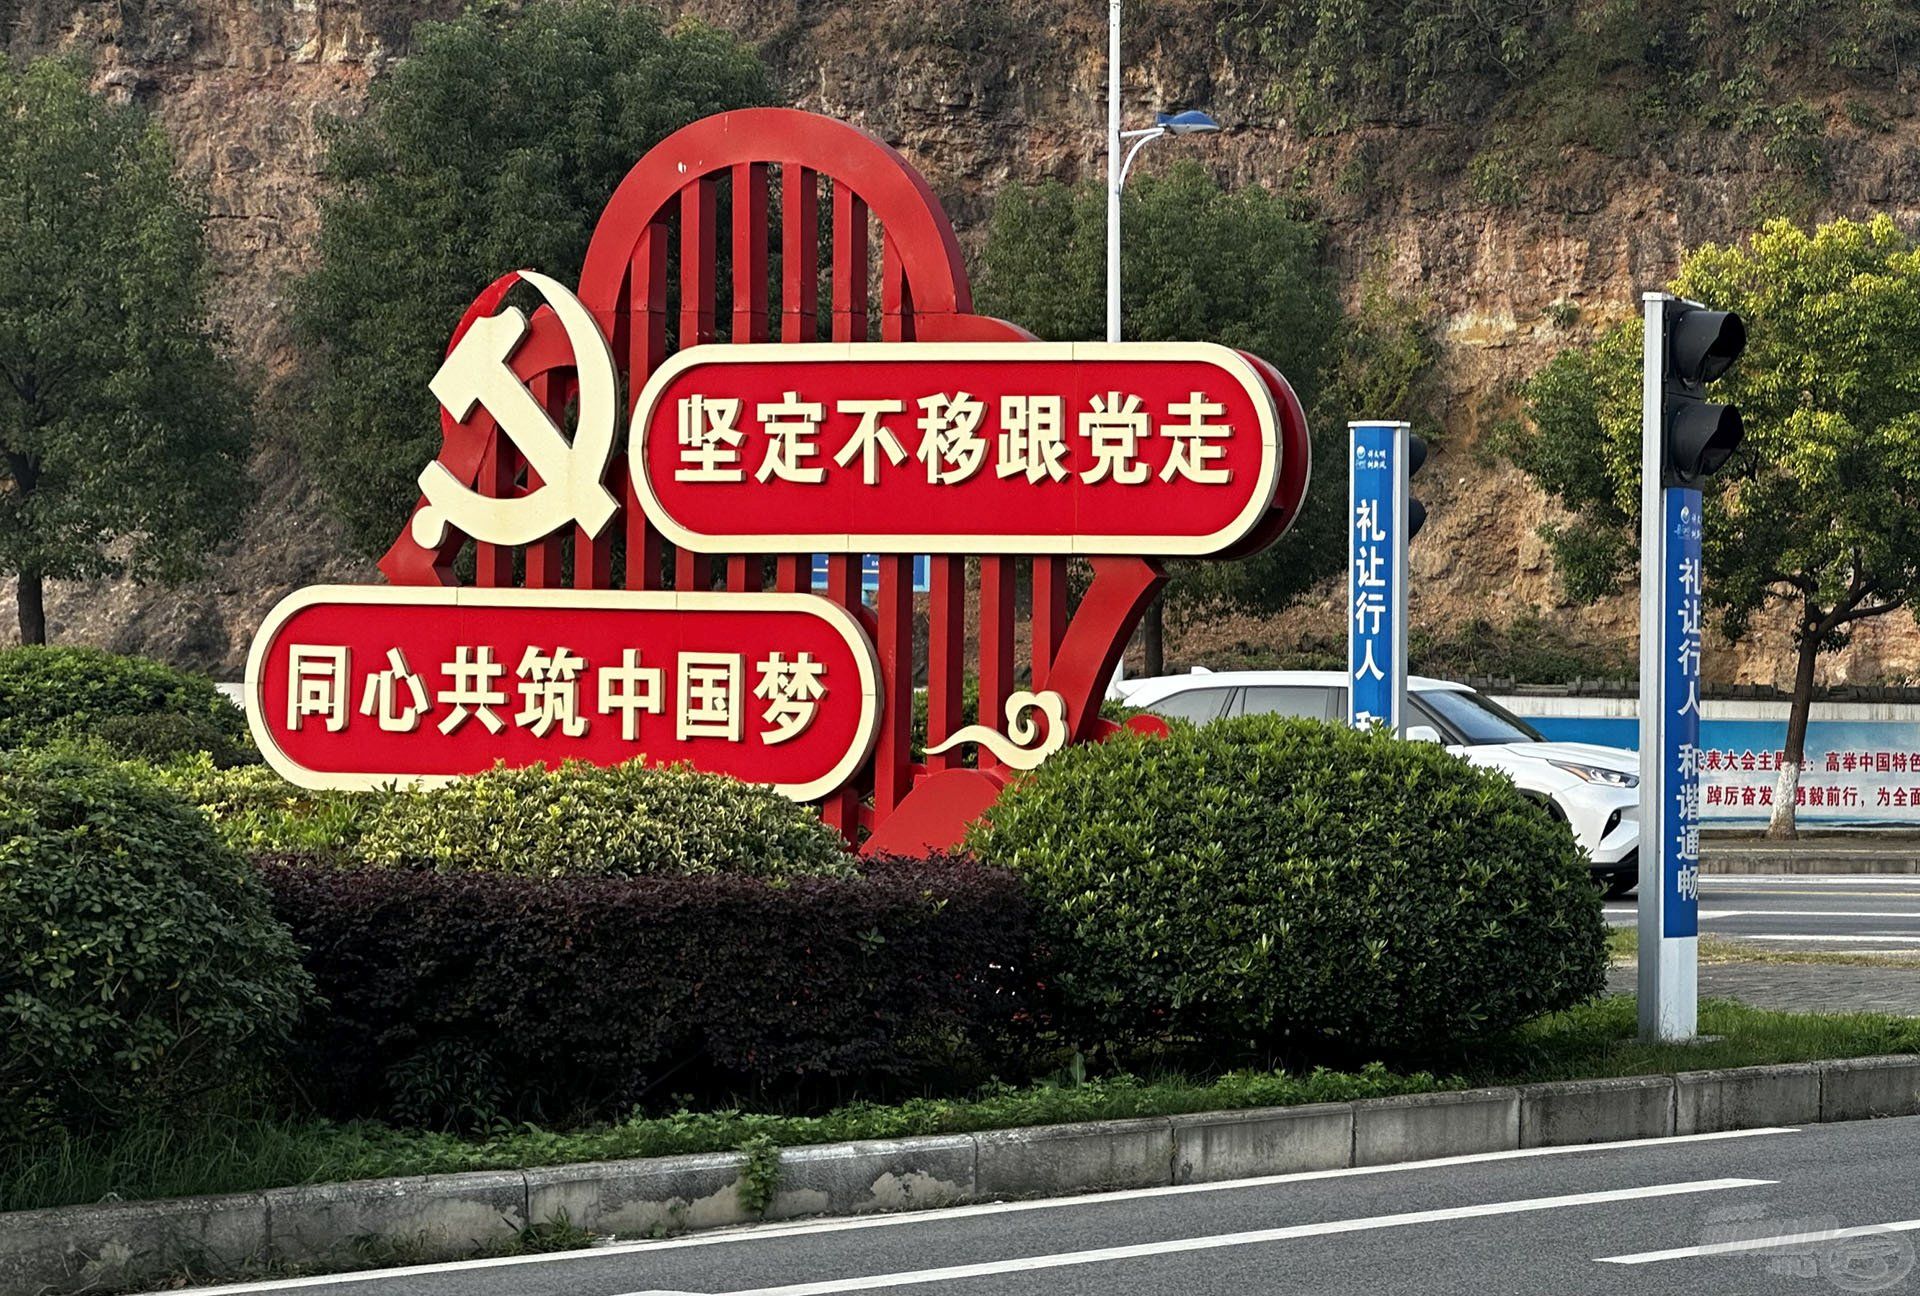 Kínában nincs széthúzás, csak egy irány van! Ez olvasható a képen: „Rendíthetetlenül kövesse a pártot és együtt dolgozzon a kínai álom felépítésében!”